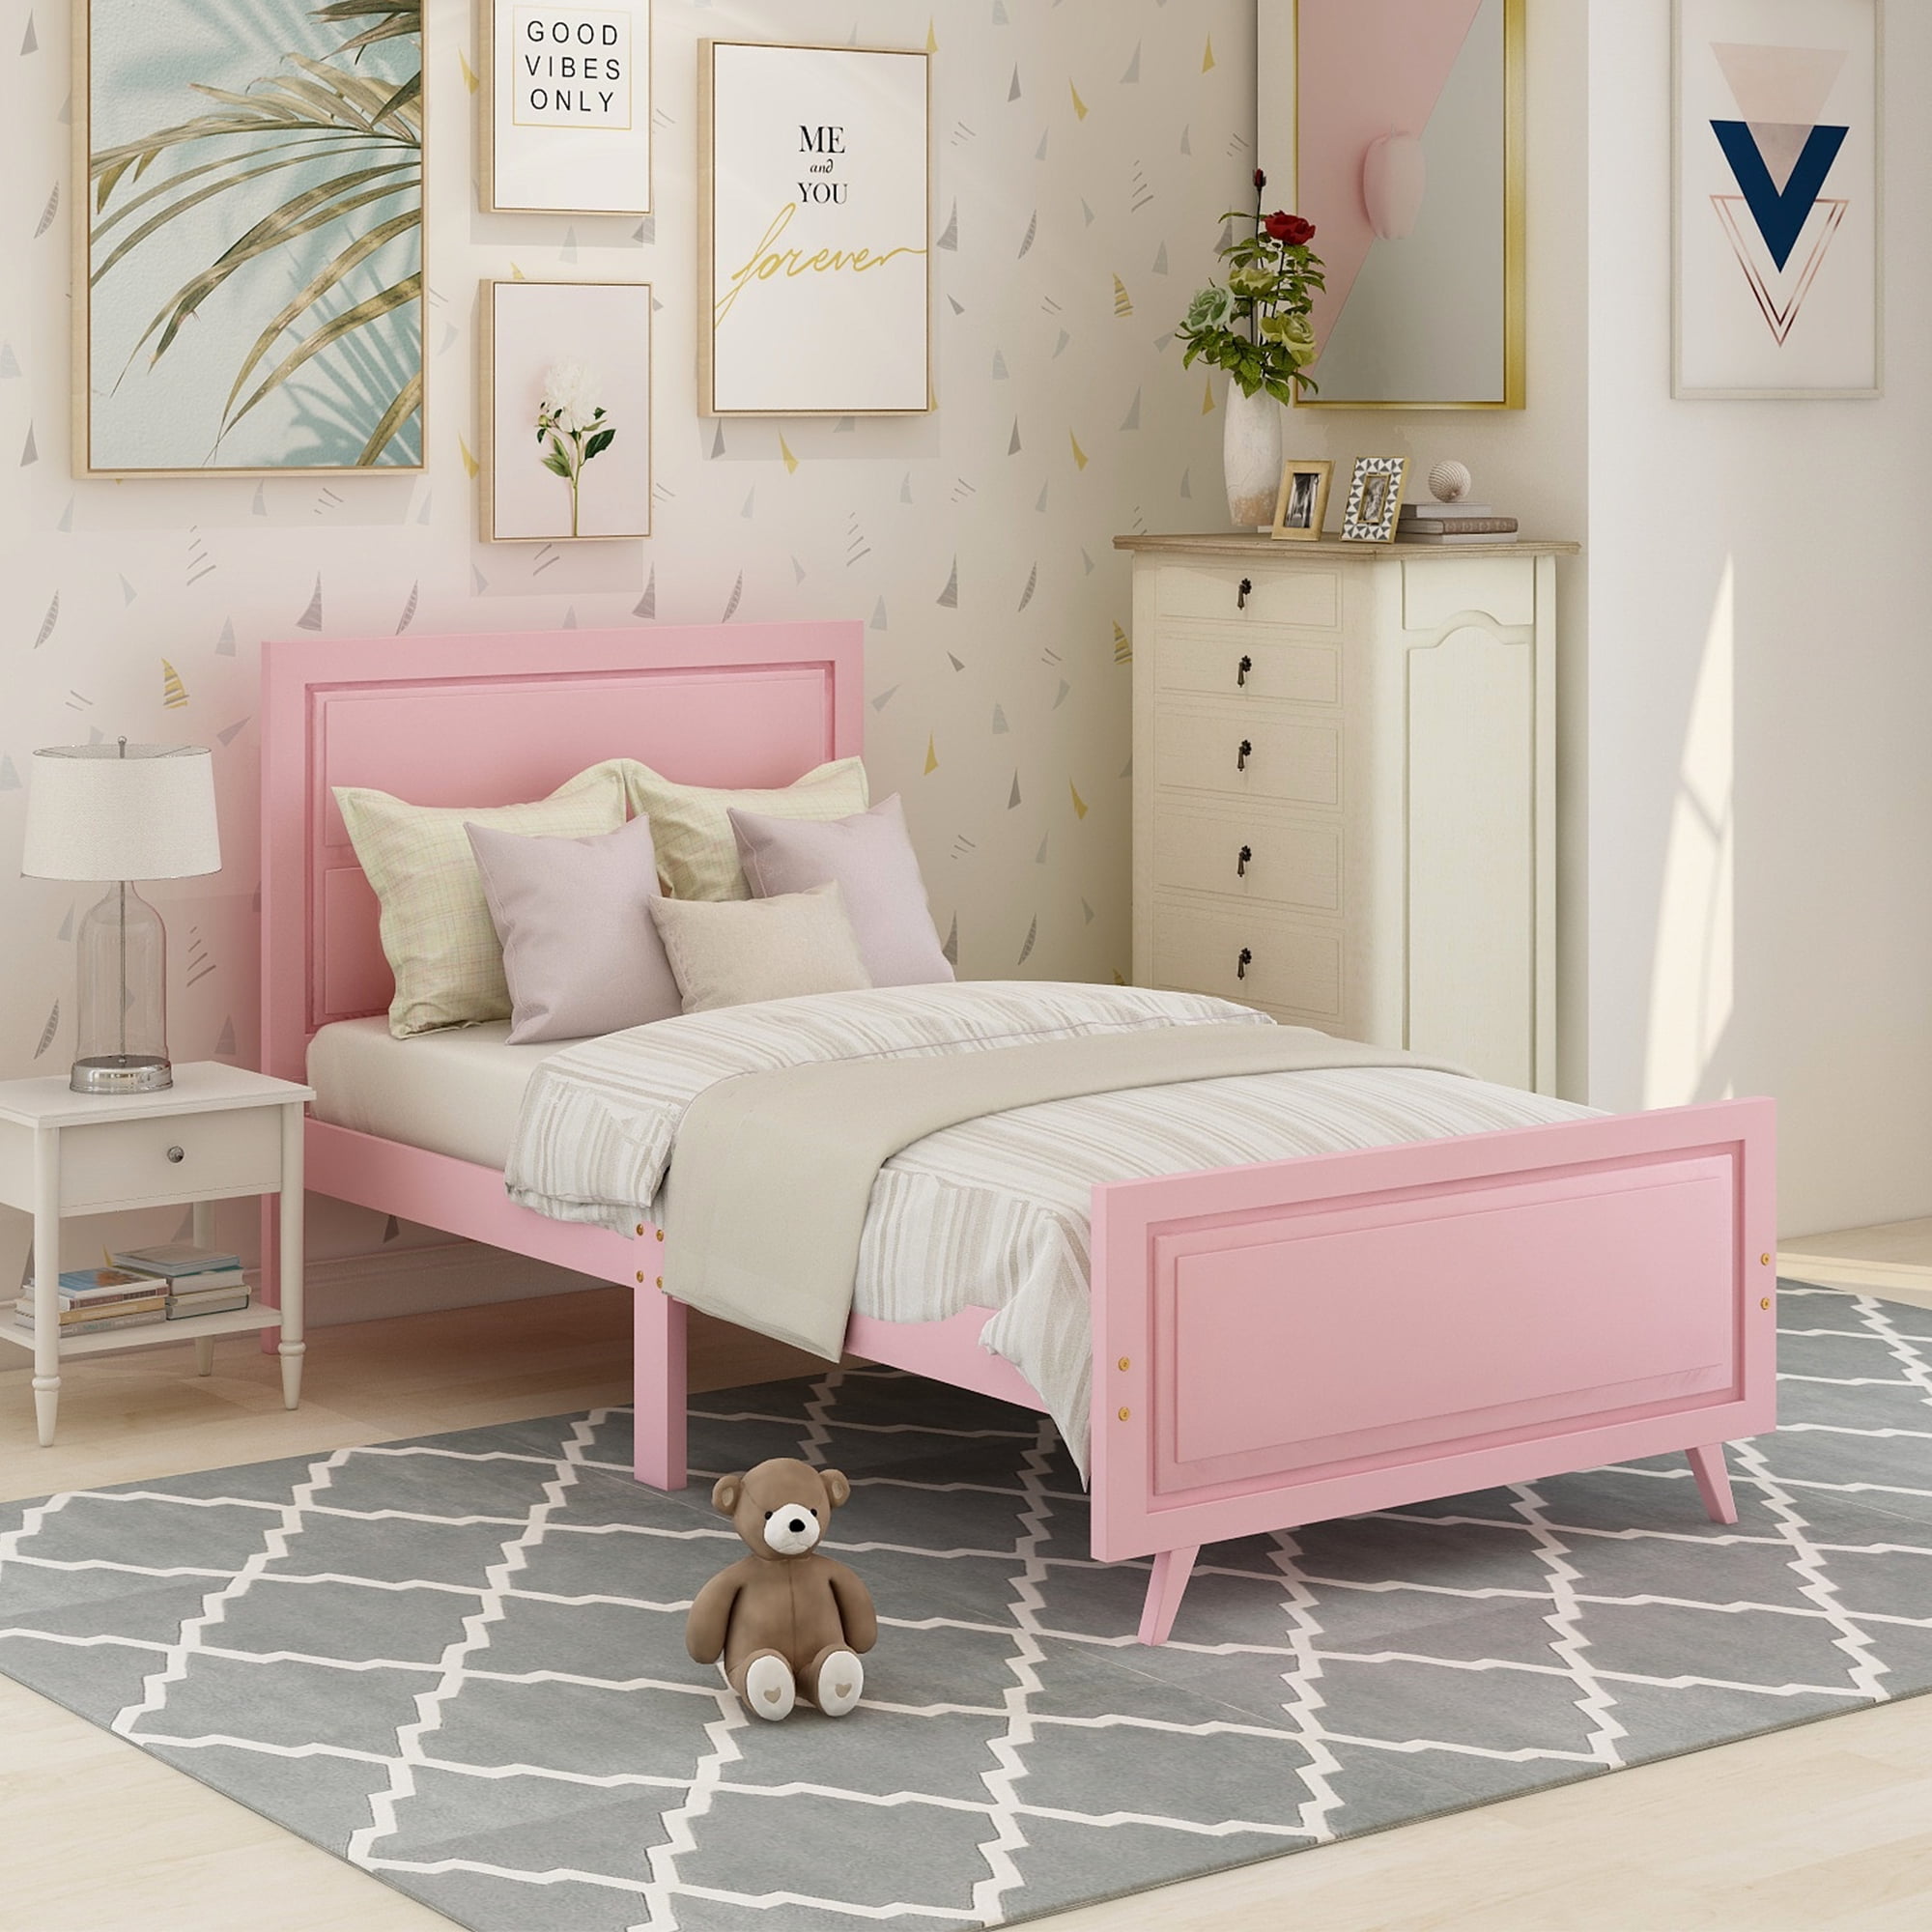 pink single bed frame